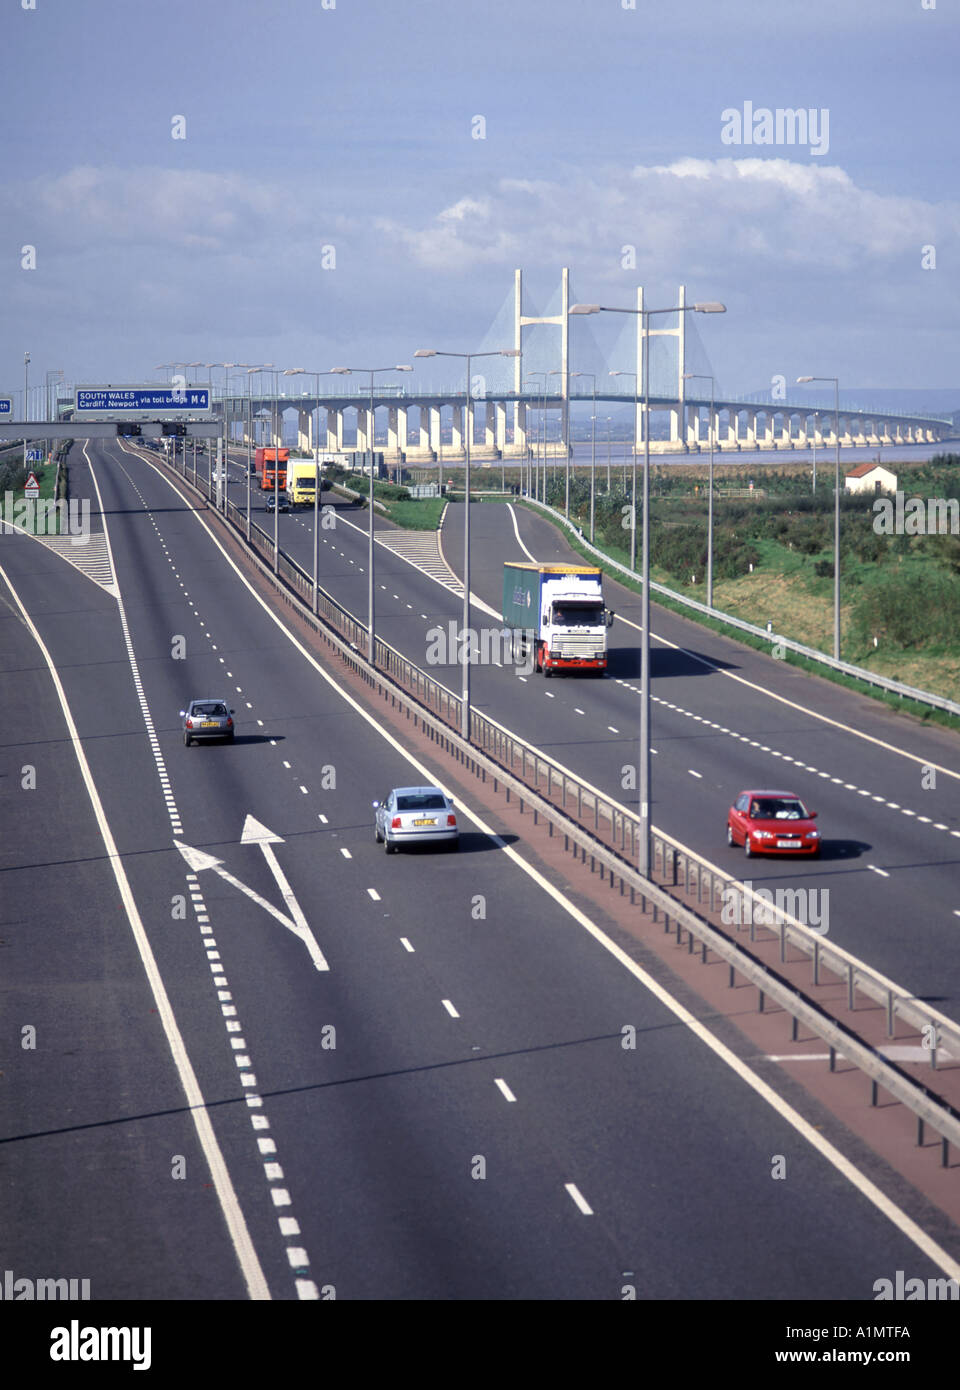 Zweite Severn Crossing Infrastruktur Projekt Verknüpfung von England und Wales über Autobahn M4 zweispurigen Zufahrtsstraße in South Gloucestershire, Großbritannien Stockfoto